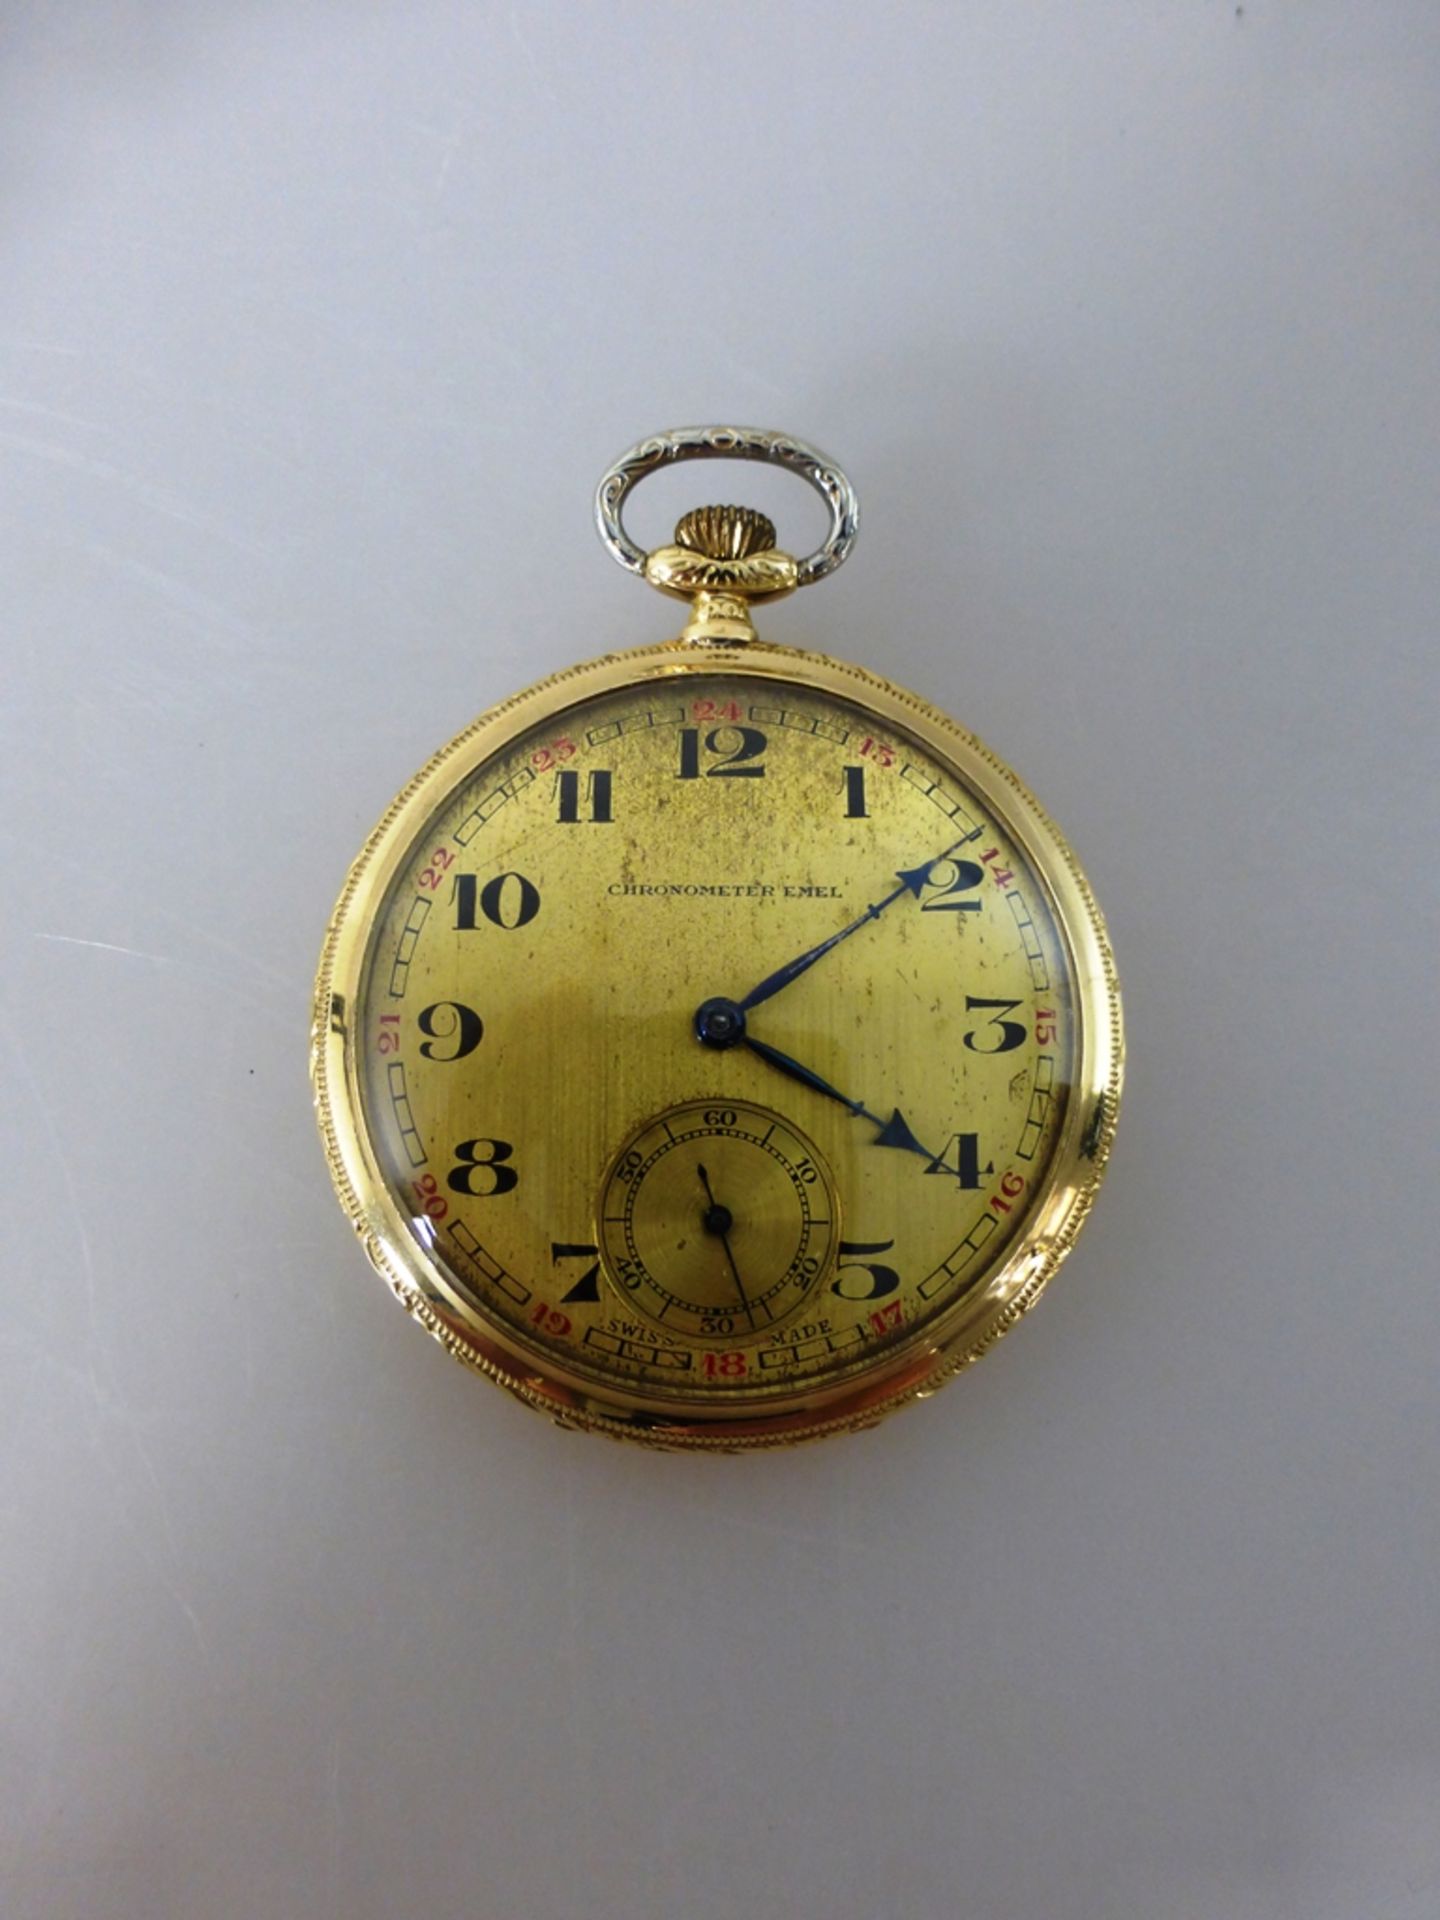 Goldtaschenuhr, Chronometre Emel, mit Streifendekor verziertes Goldgehäuse, Feingehalt